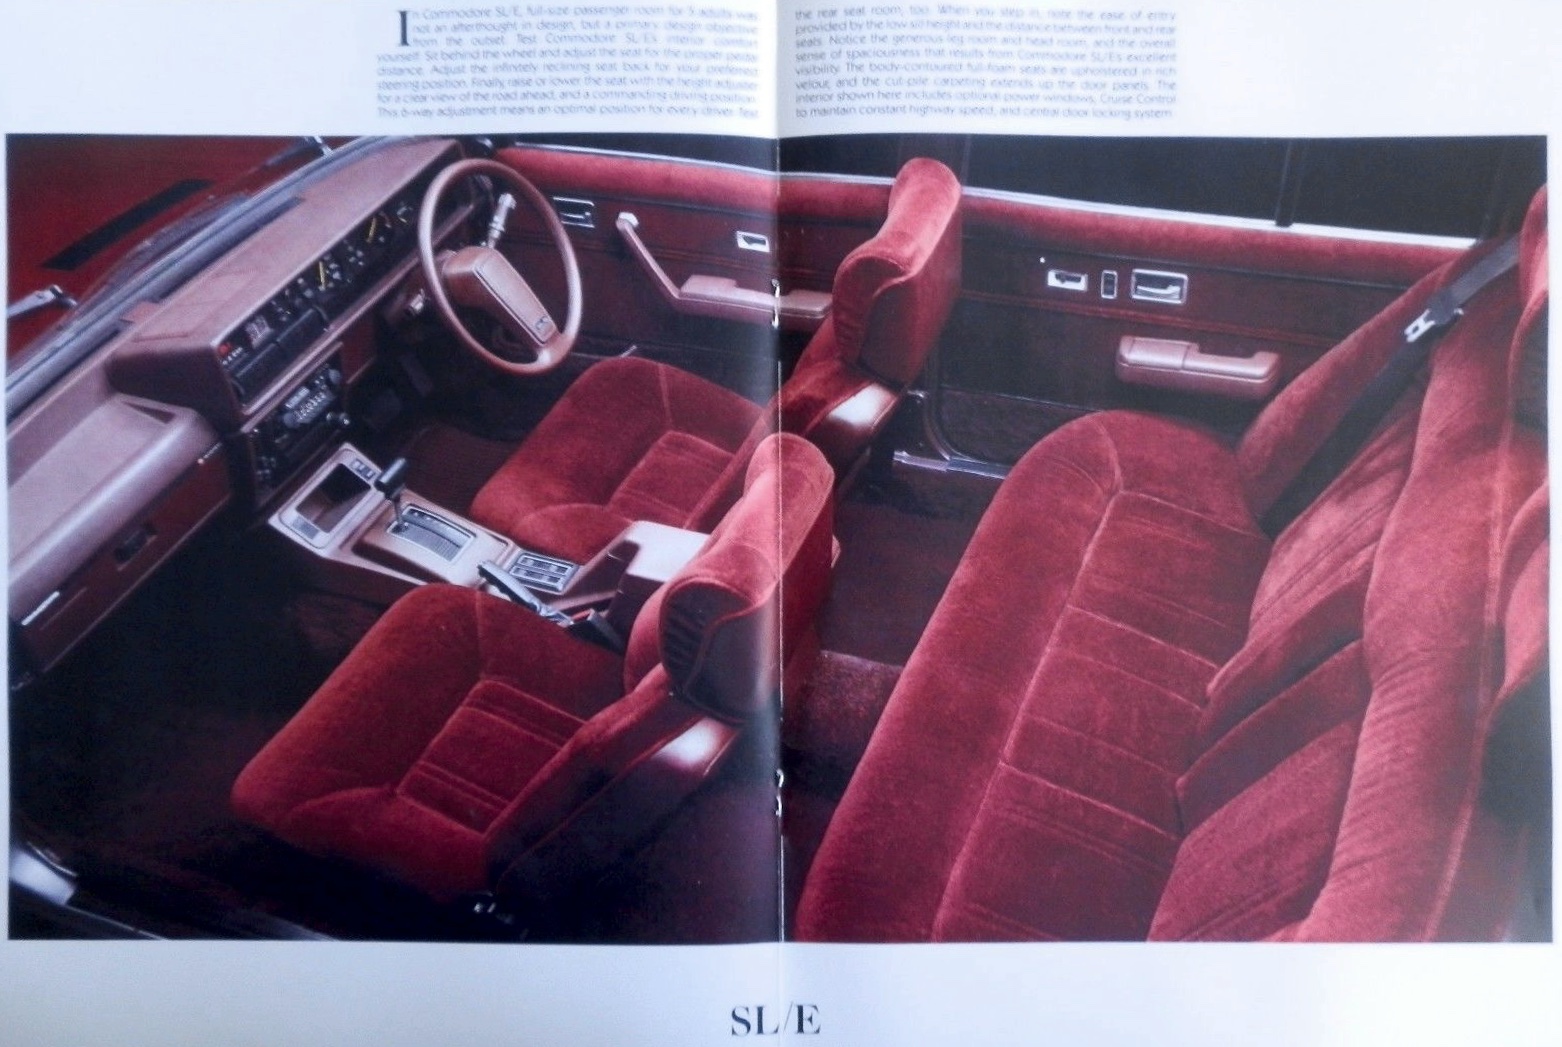 1981 Holden Commodore VH SL/E Brochure Page 6